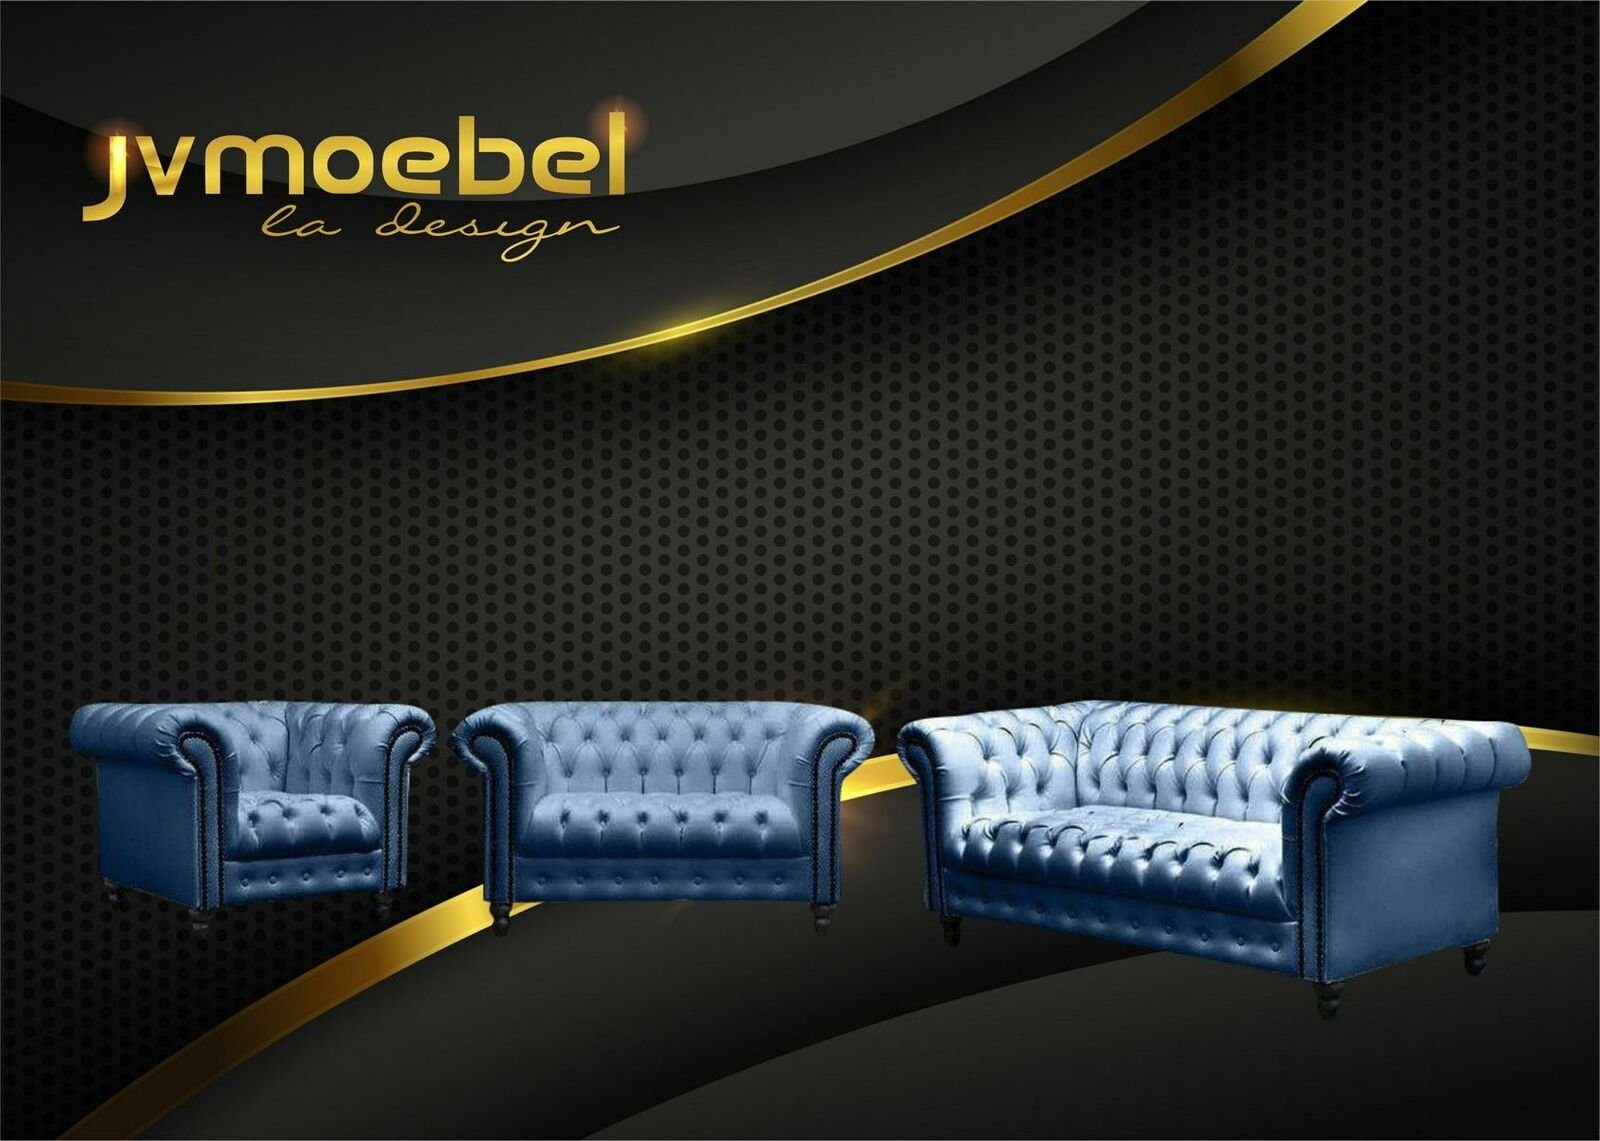 JVmoebel Sofa, Wohnzimmer Chesterfield Design Sofagarnitur Möbel Couch Blau